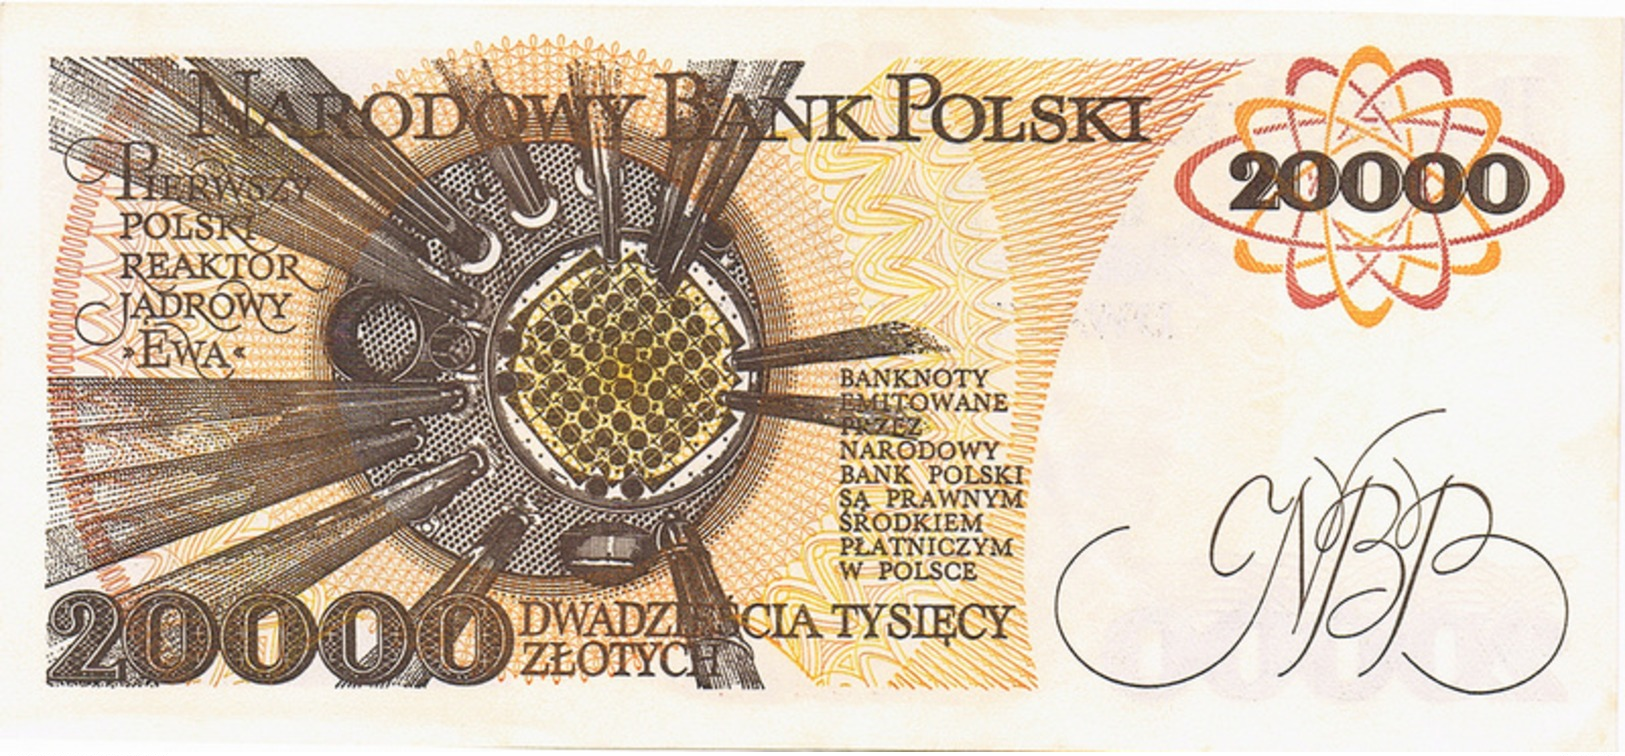 NARODOWY BANK POLSKI - 20.000 ZLOTYCH - 1989 - Poland